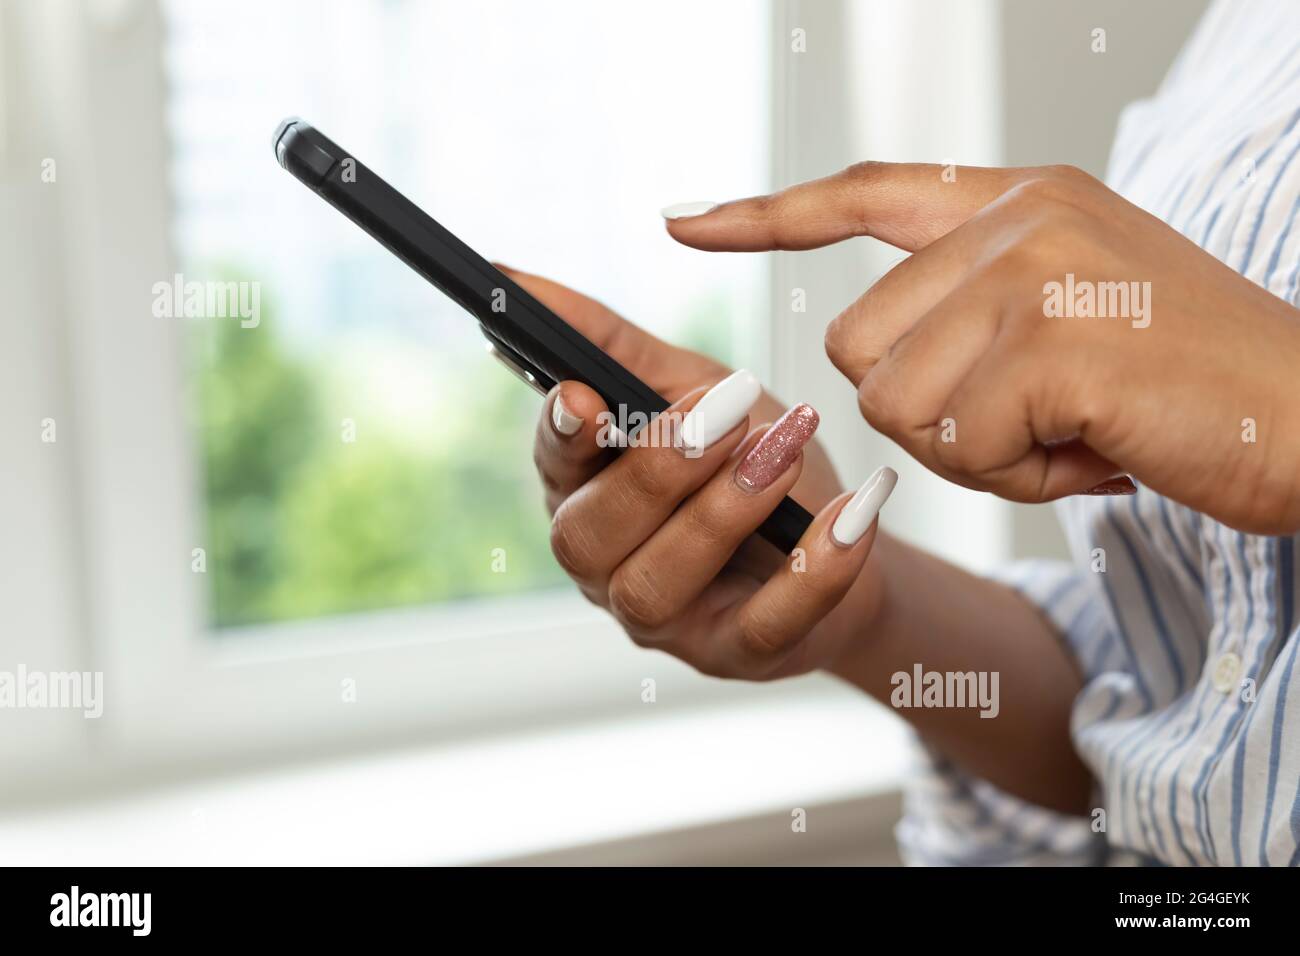 Die Hände einer afrikanischen Frau halten ein Mobiltelefon. Schwarze Studentin schreibt in einem Chat mit einem Smartphone. Nahaufnahme. Stockfoto